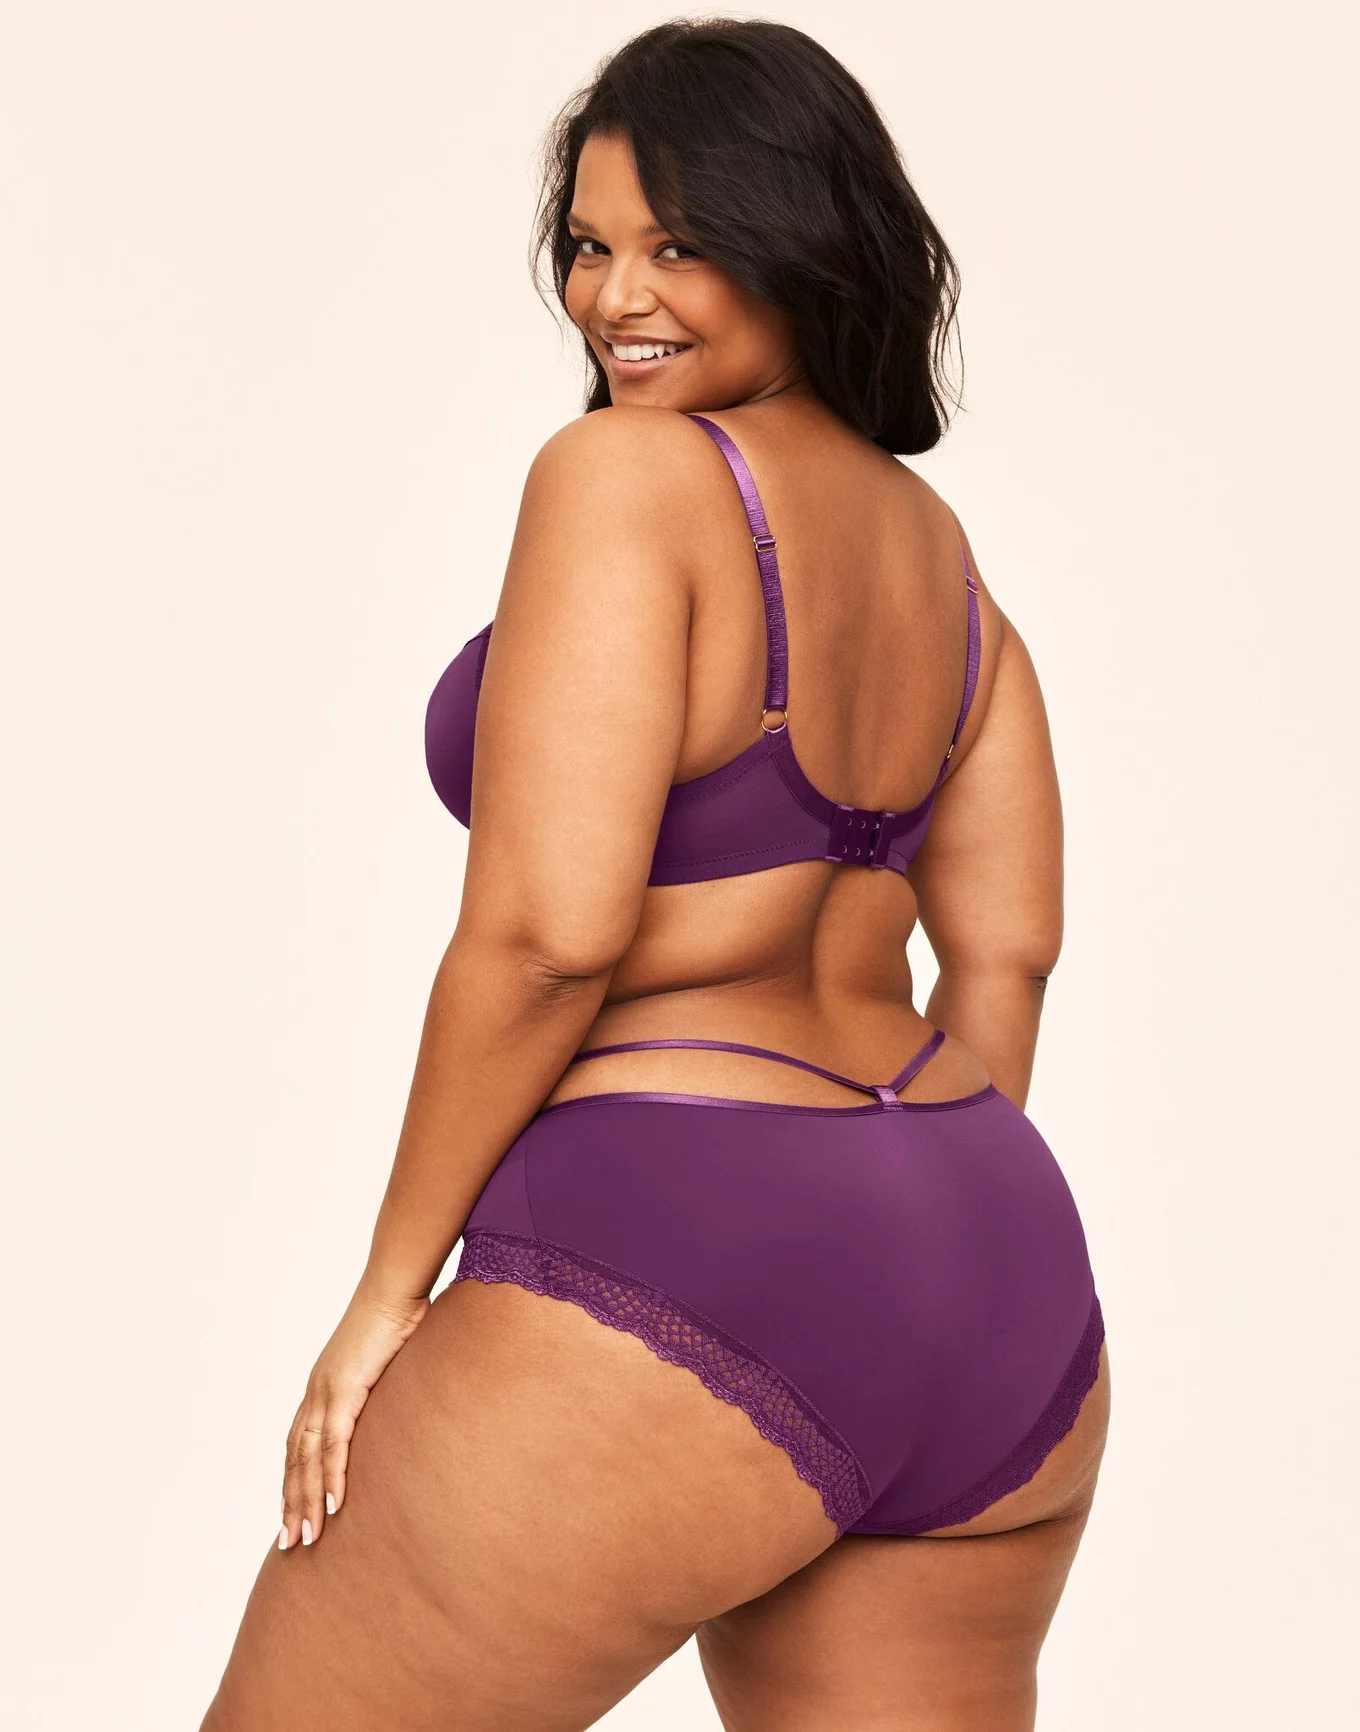 36A Bras for Women Plus Size Bikini Tops for Large Bust Bras for Women Sexy  Bras Nippleless Bras Purple Lingerie Sexy Set Womens Underwear Black